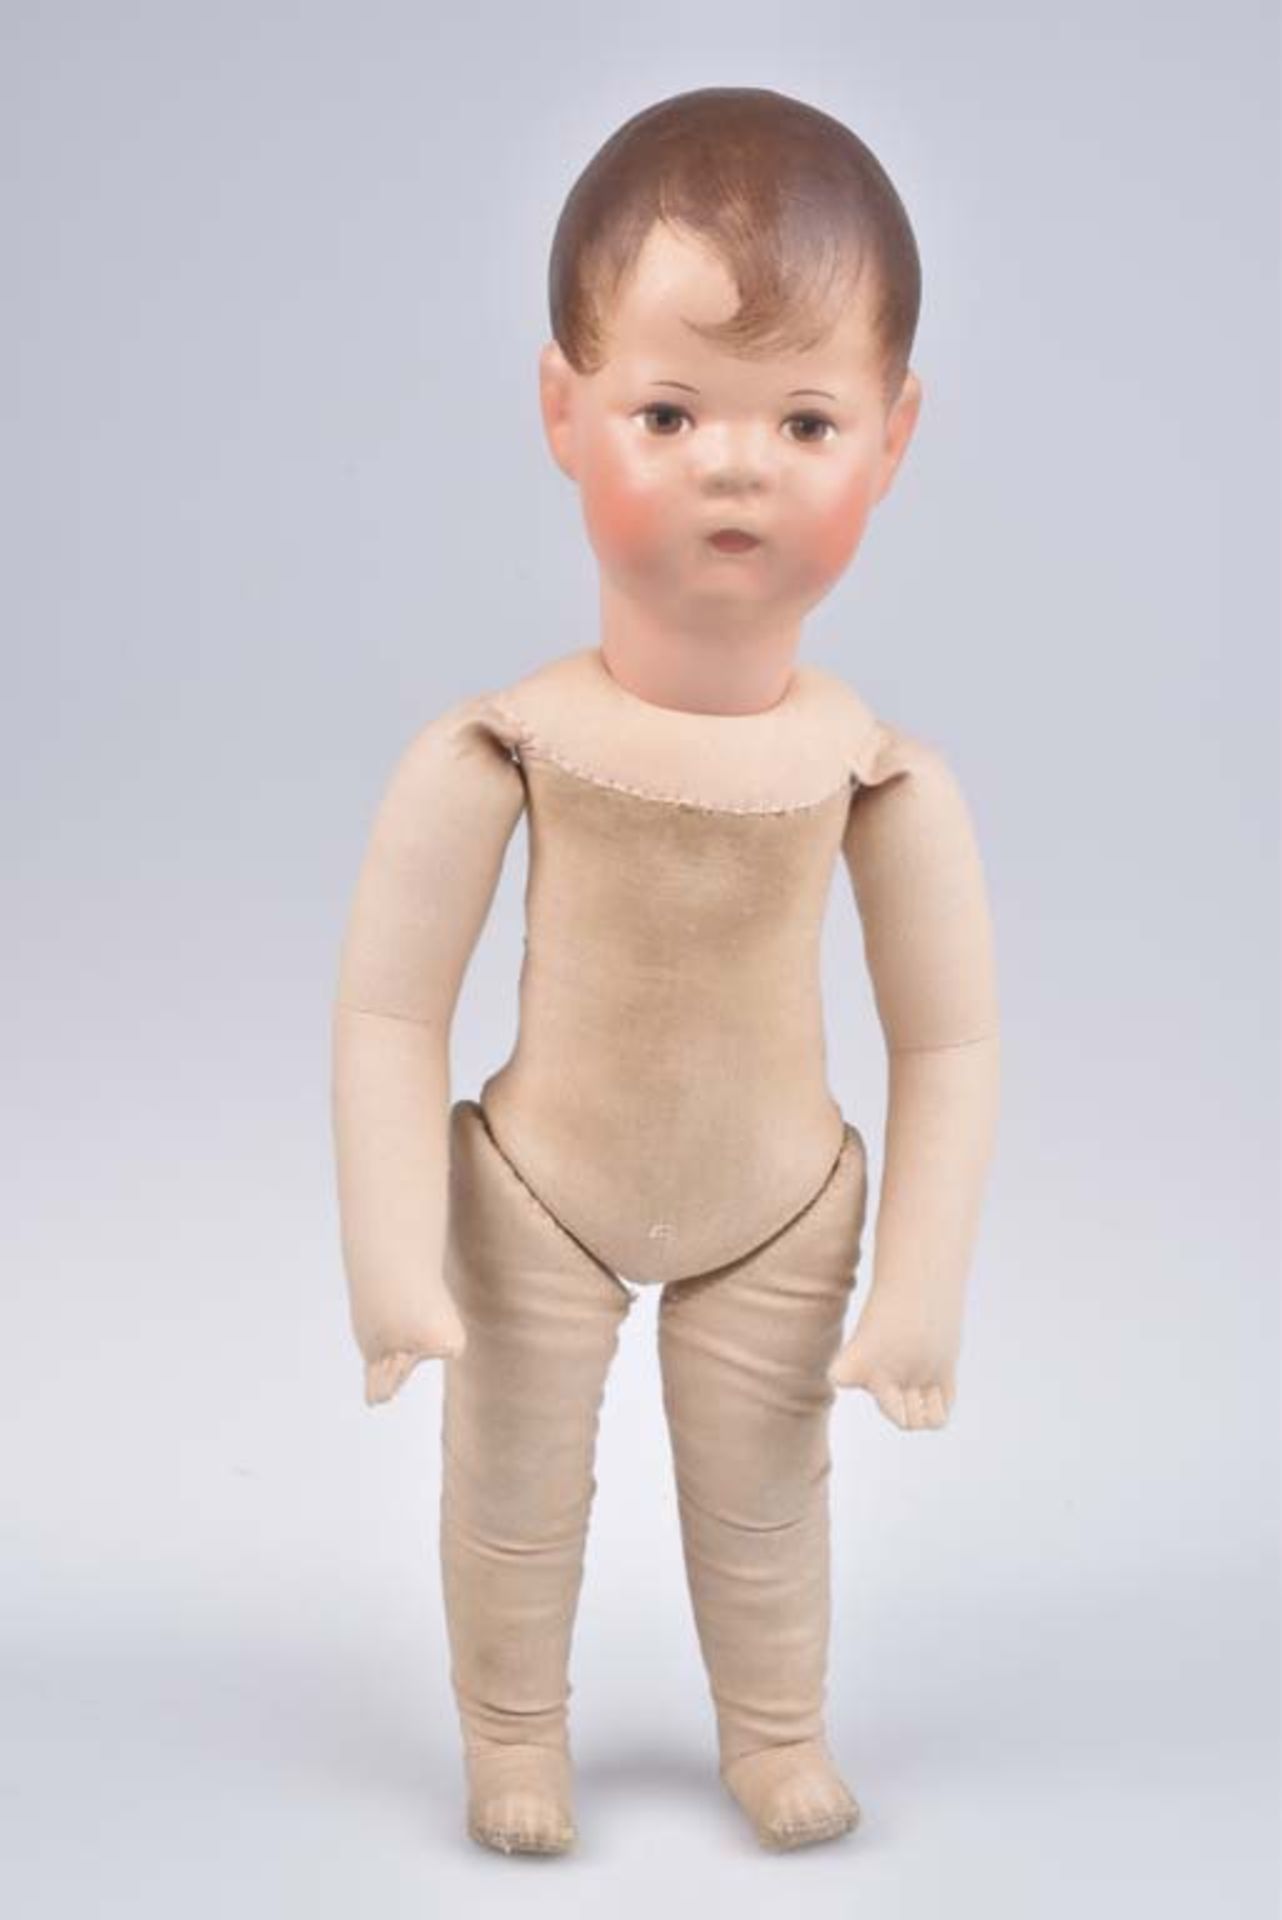 KÄTHE KRUSE Puppe Junge, bemalter Stoffkopf mit braunen Haaren, braunen Augen, mit ei - Bild 3 aus 4